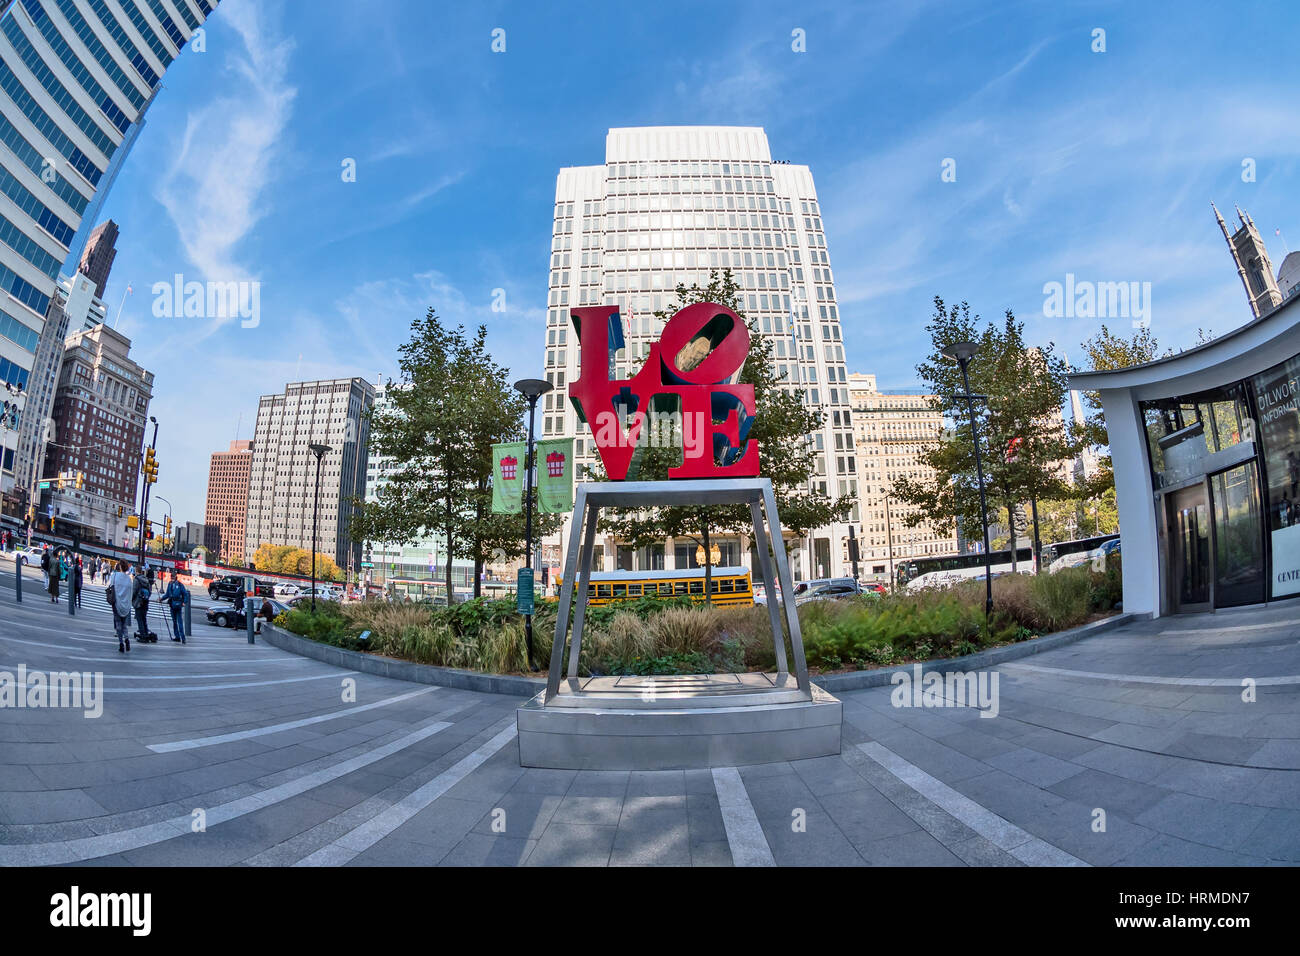 Vue de Philadelphie avec amour célèbre sculpture, New York, USA Banque D'Images